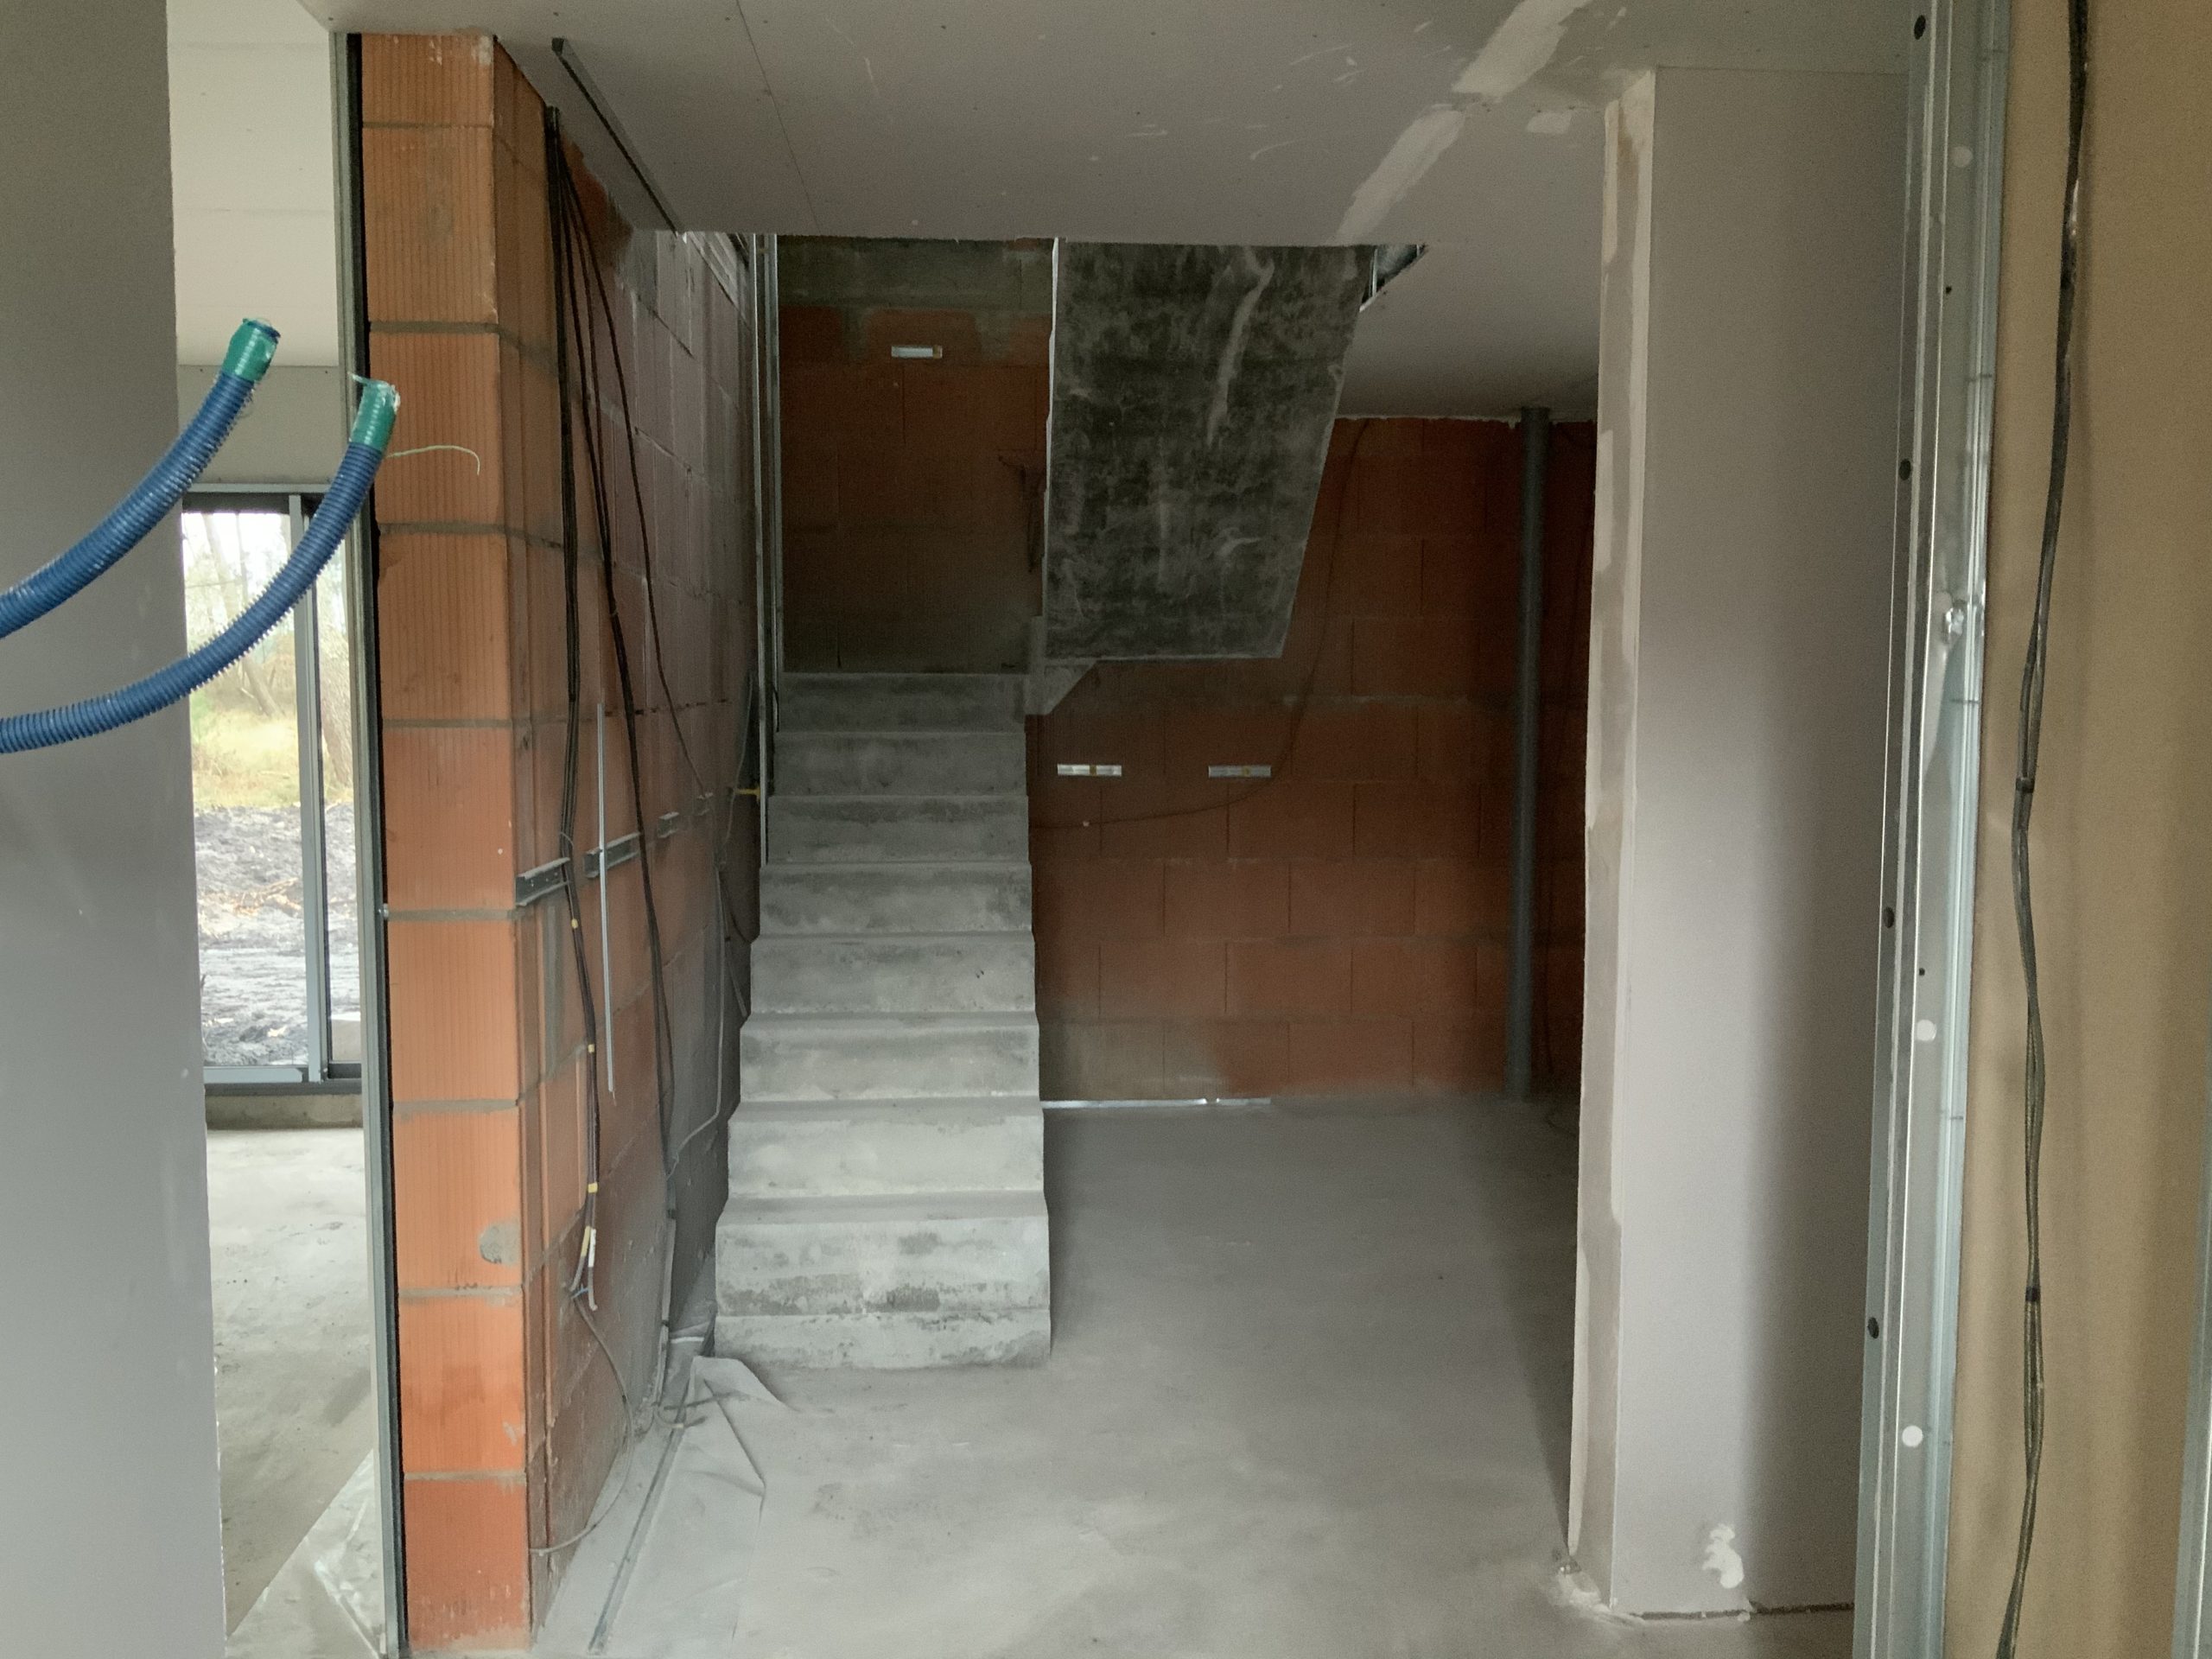 Escalier en béton brut avec deux volée droite et deux paliers intermédiaires dans une maison individuelle en construction près de Bordeaux